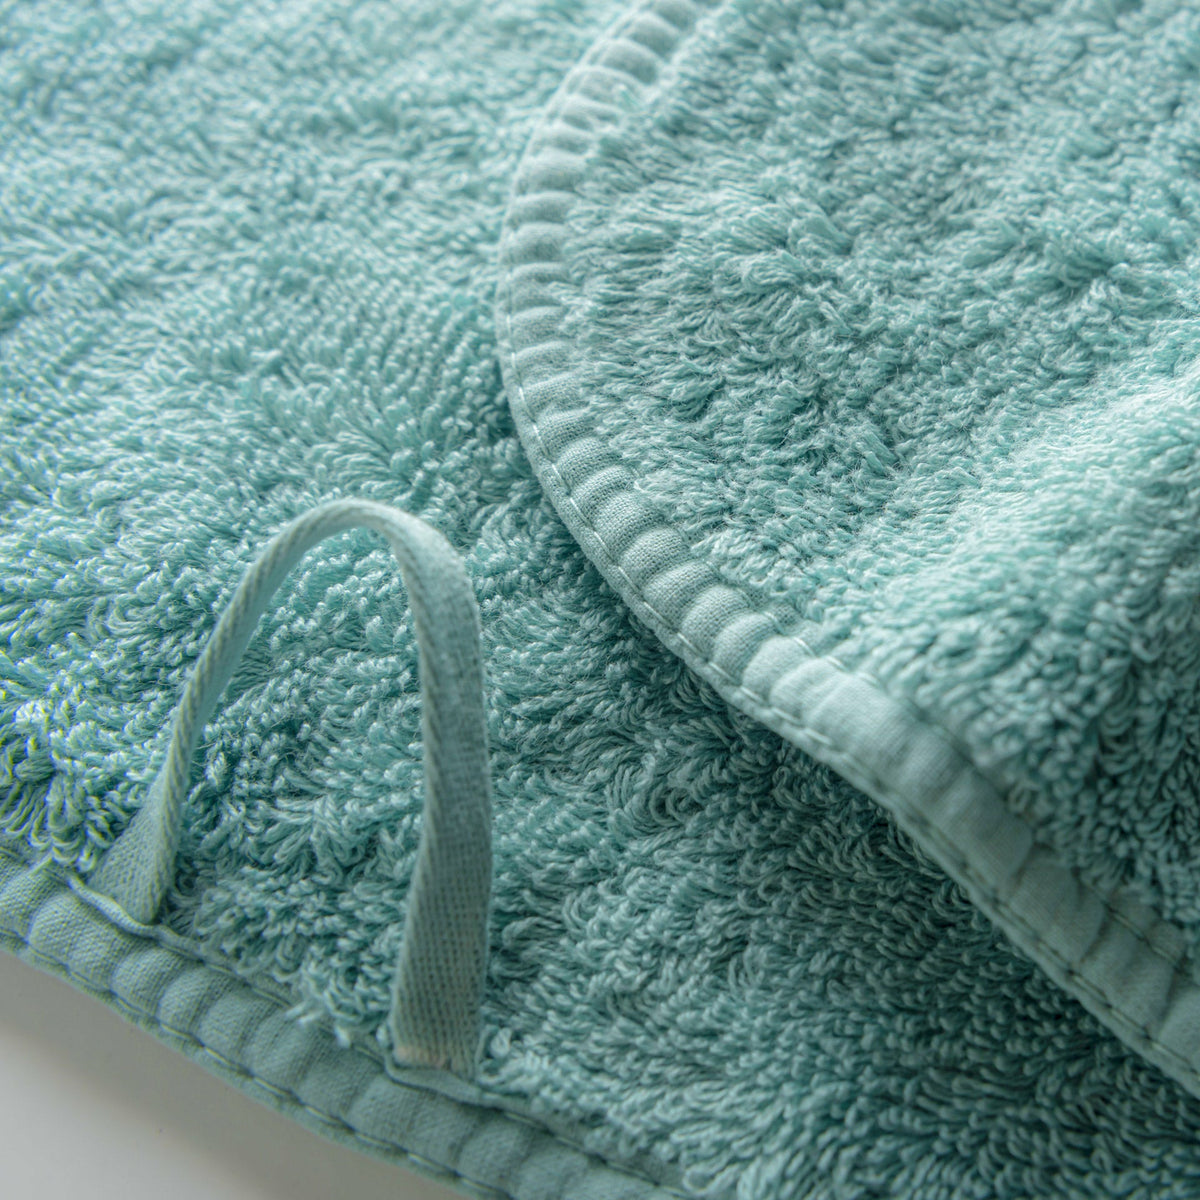 Graccioza Long Double Loop Bath Towels Close Up Baltic Fine Linens